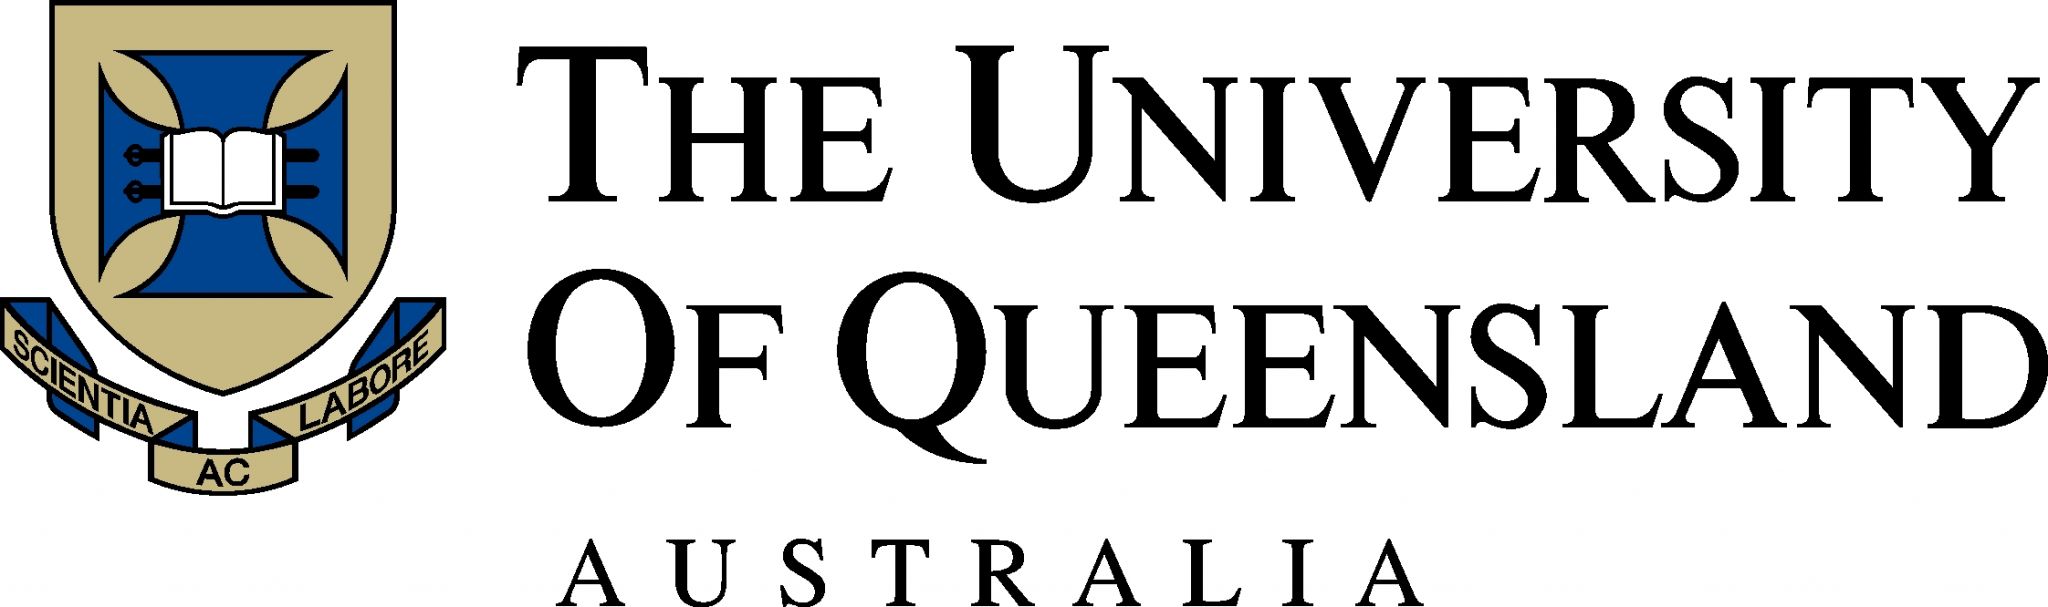 http://www.net4info.de/photos/cpg/albums/userpics/10002/University_of_Queensland_.jpg